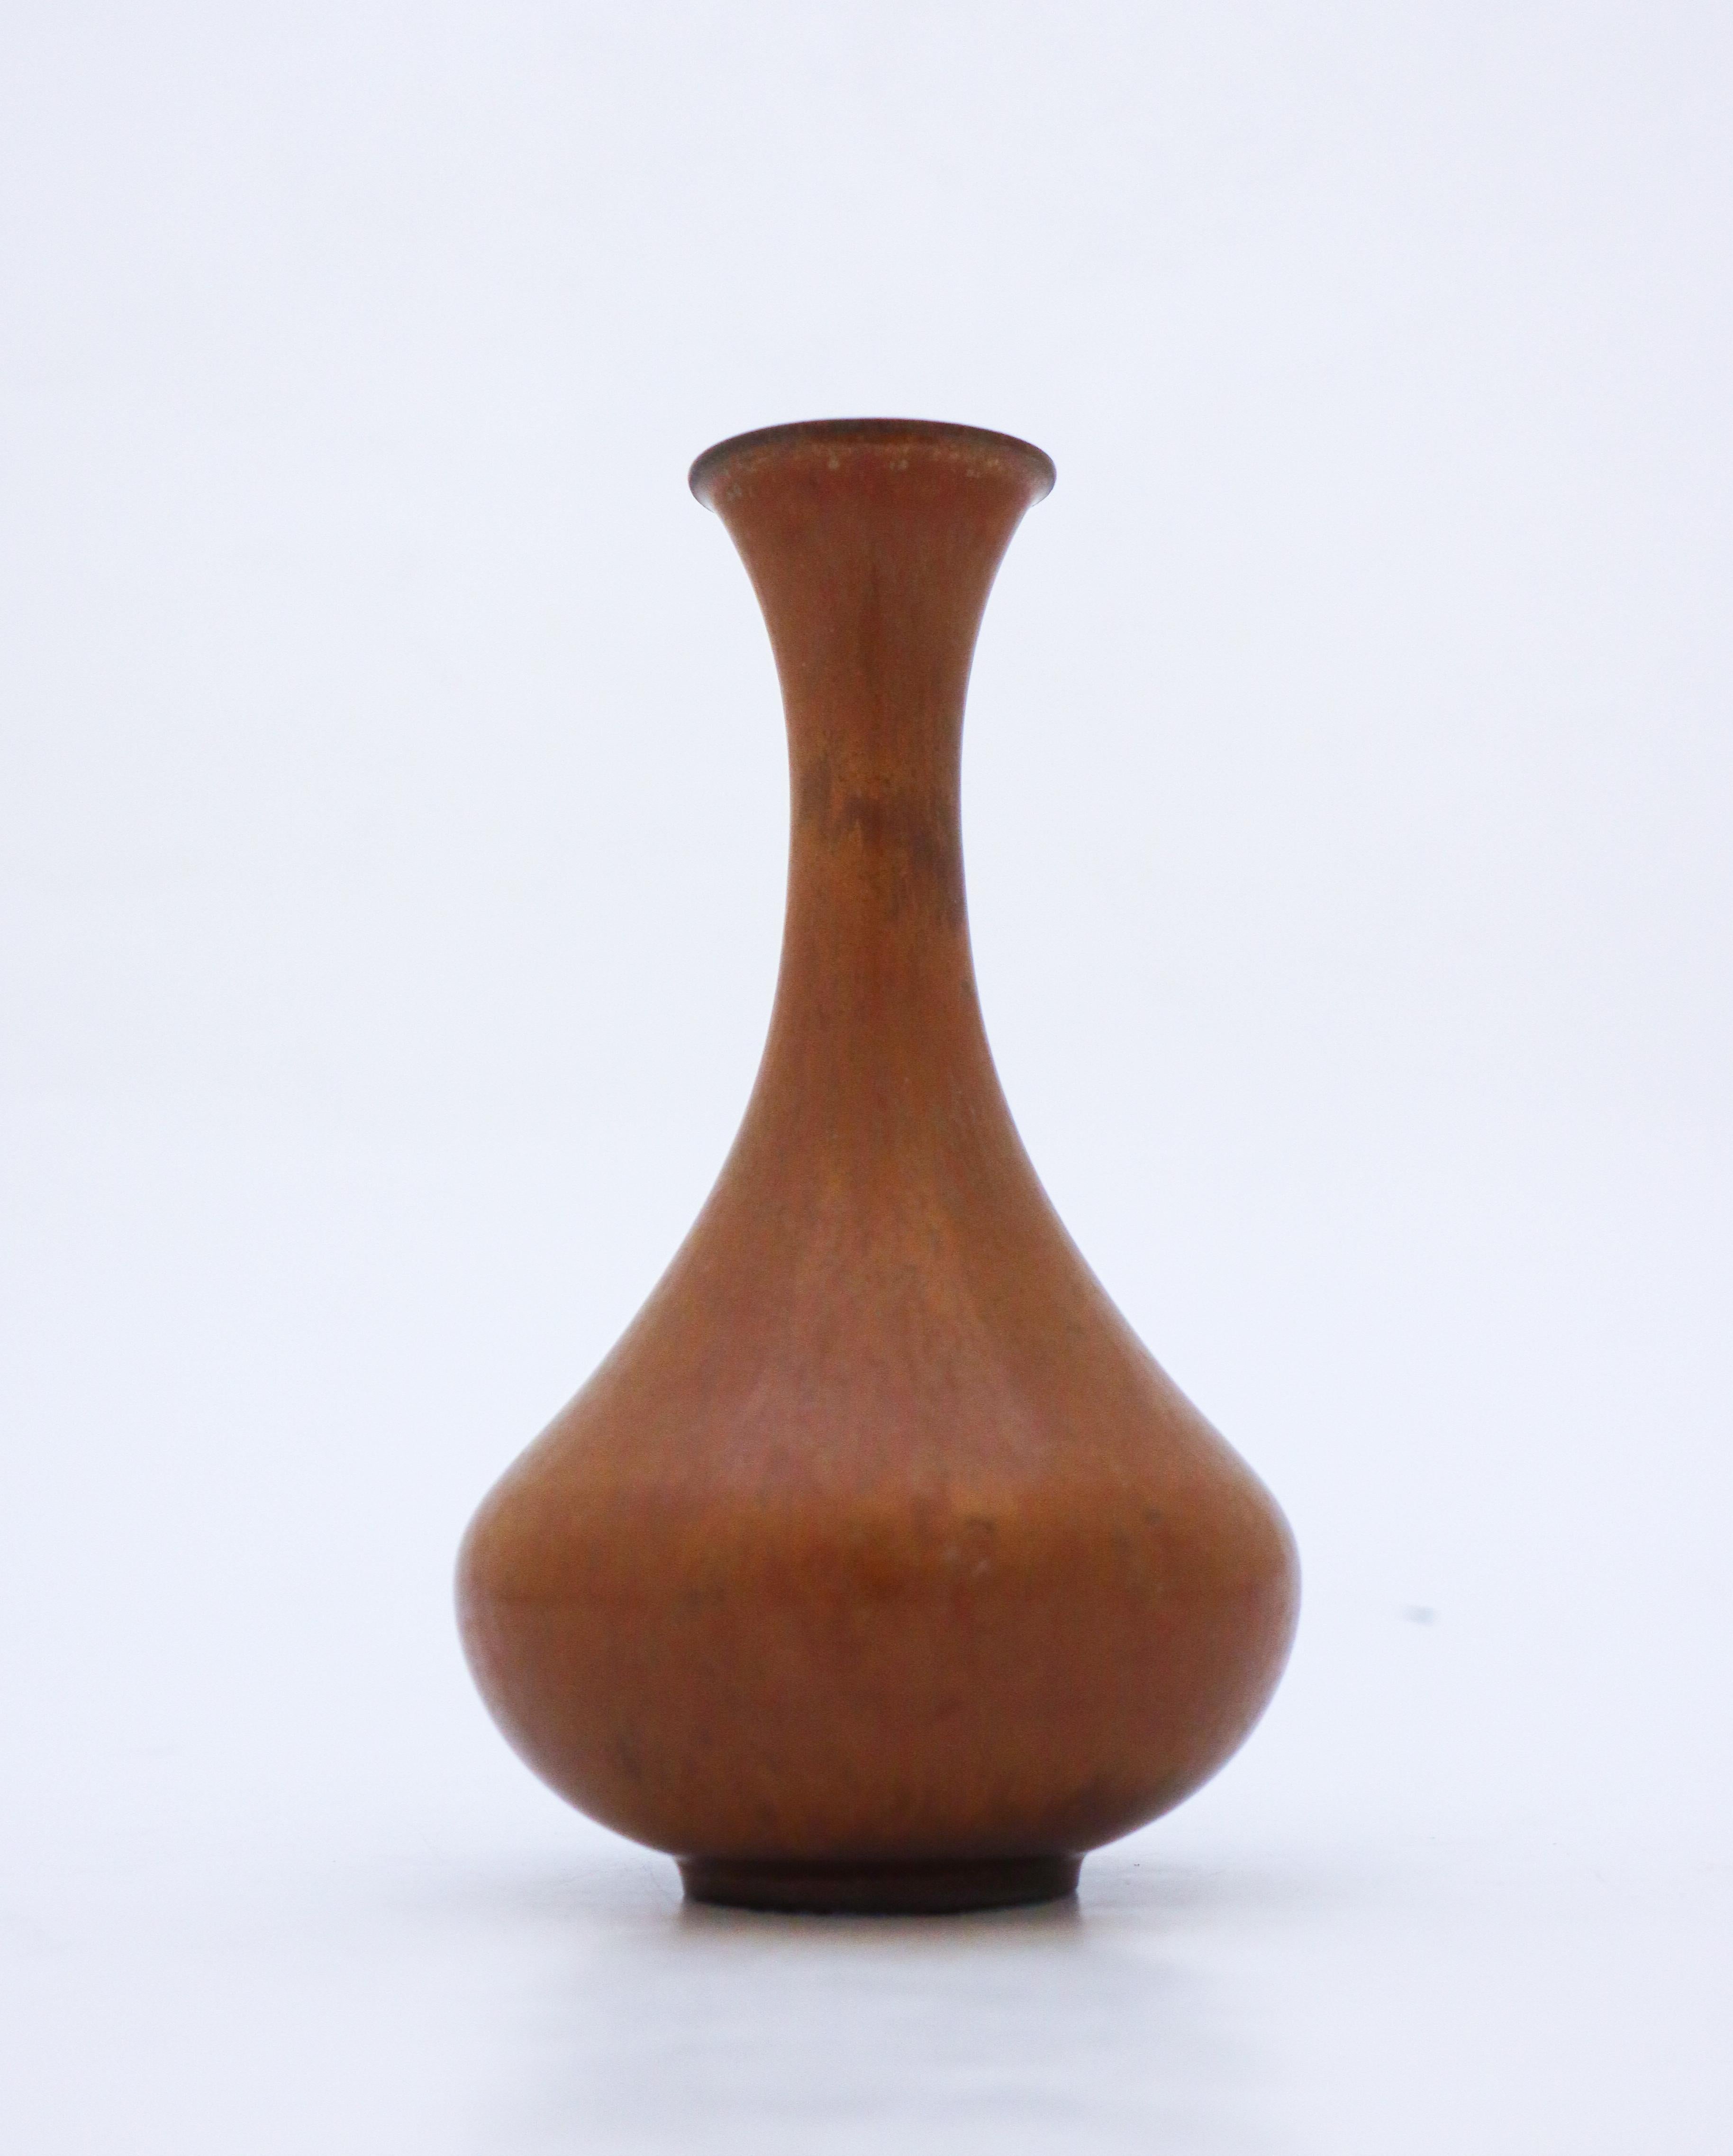 Die braune Vase wurde von Gunnar Nylund in Rörstrand entworfen und ist 16,5 cm (6,6) hoch. Es ist in neuwertigem Zustand und als 1:st-Qualität gekennzeichnet. 

Gunnar Nylund wurde 1904 in Paris geboren. Seine Eltern arbeiteten als Bildhauer und